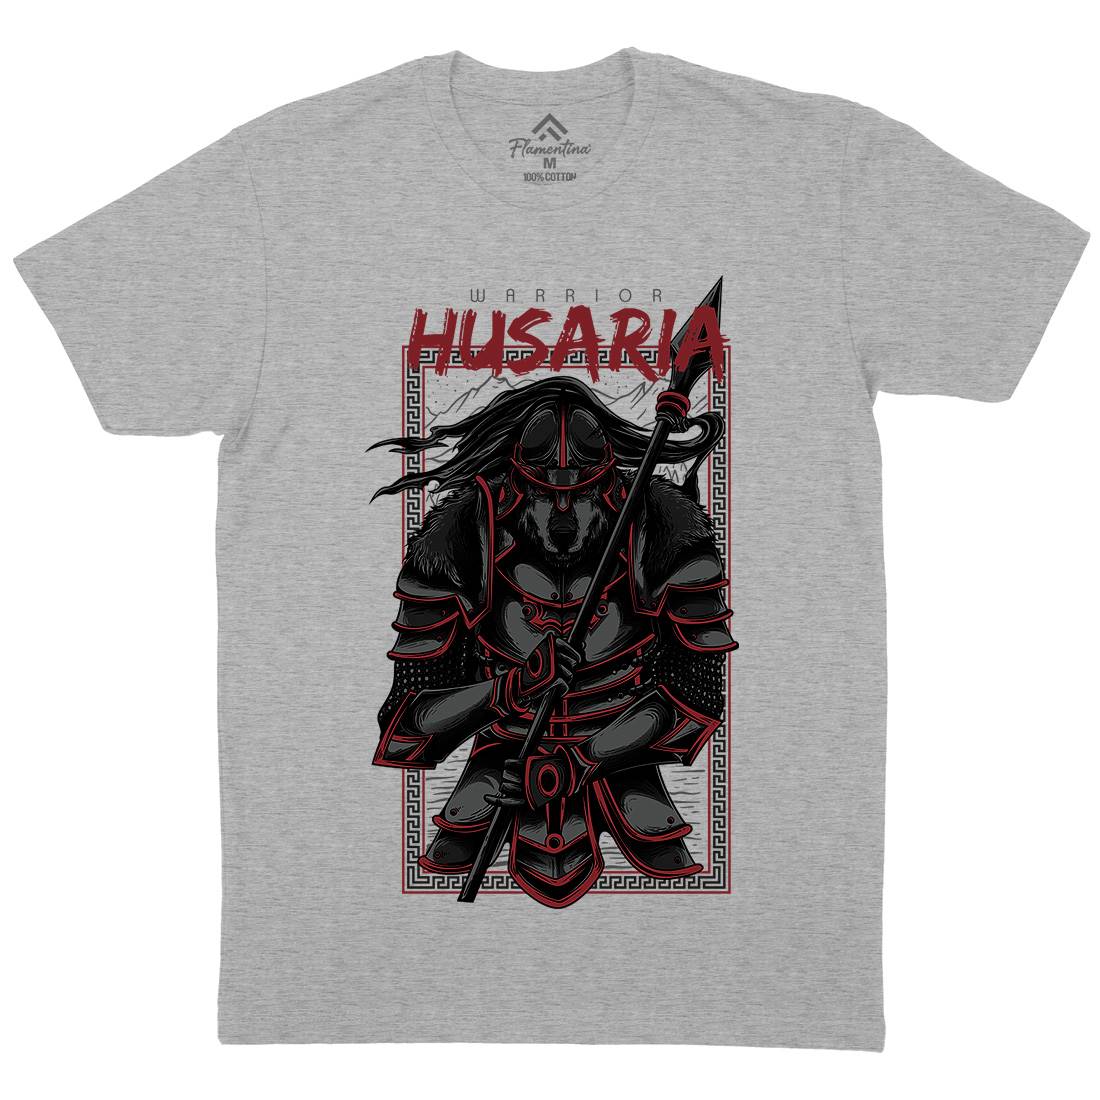 Husaria Mens Organic Crew Neck T-Shirt Warriors D618